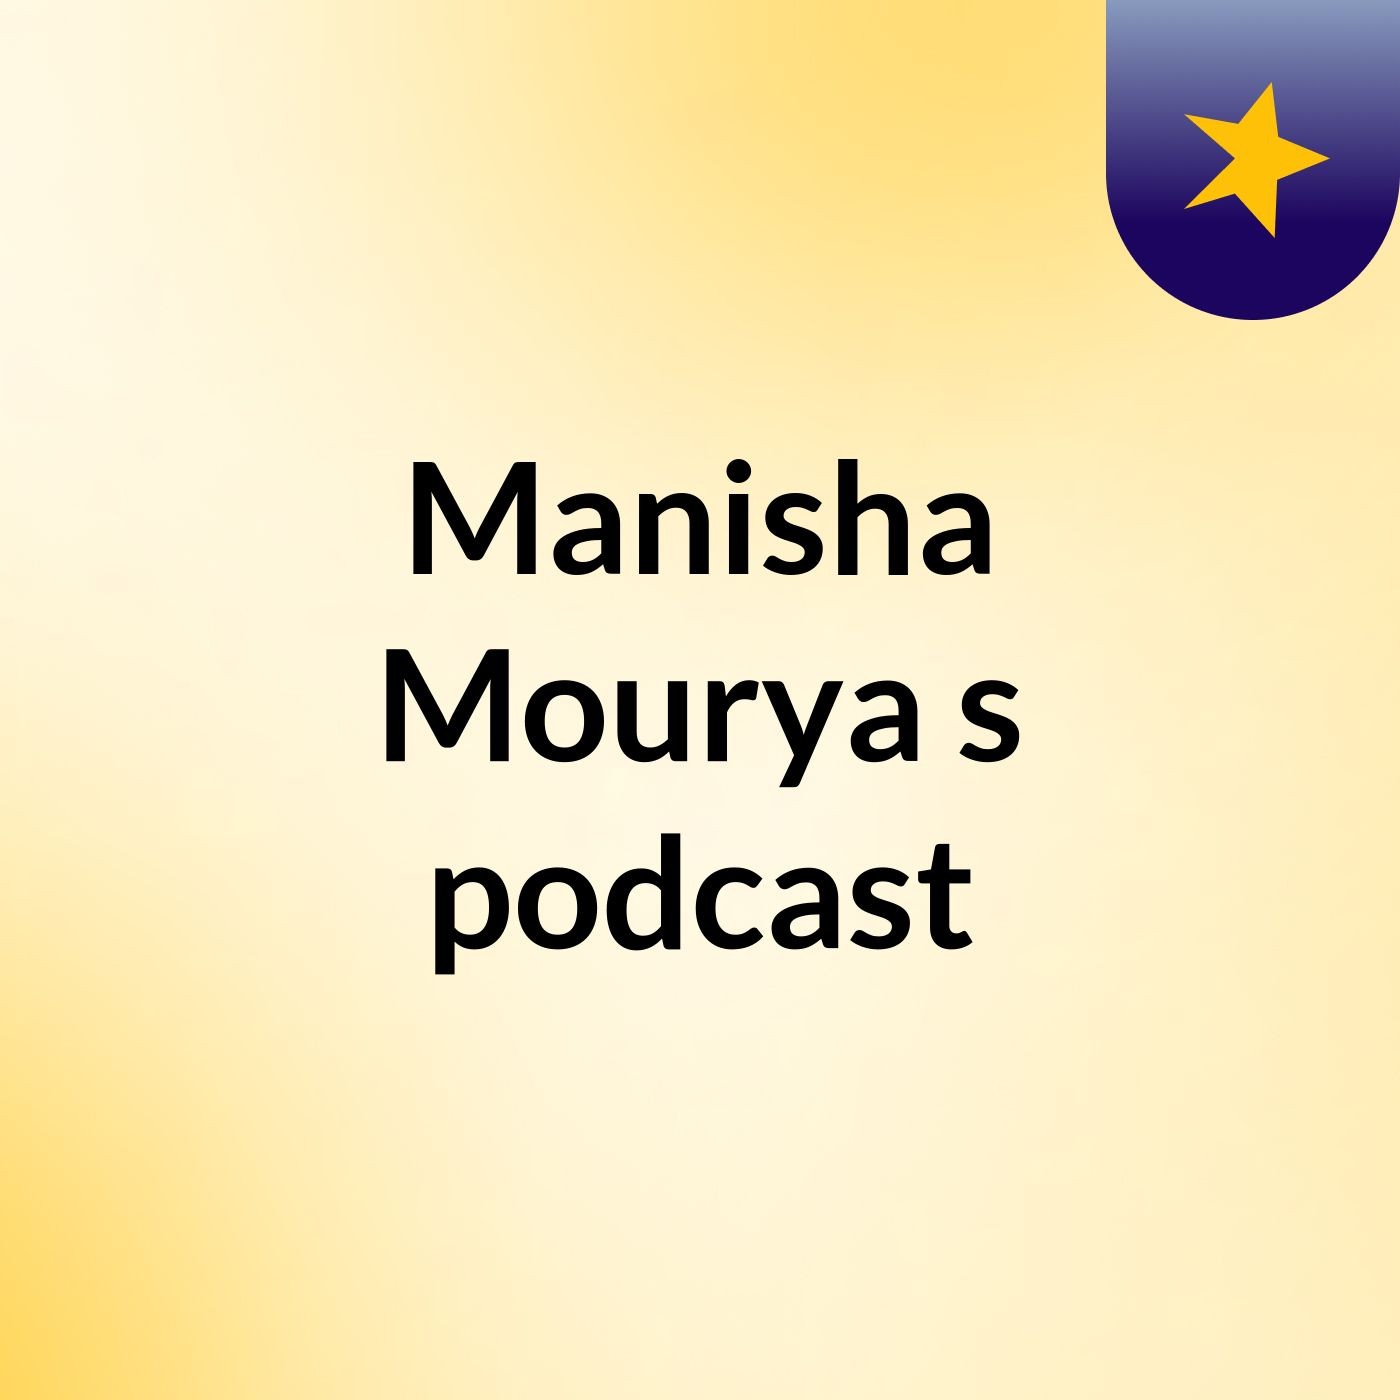 Episode 3 - Manisha Mourya's podcast